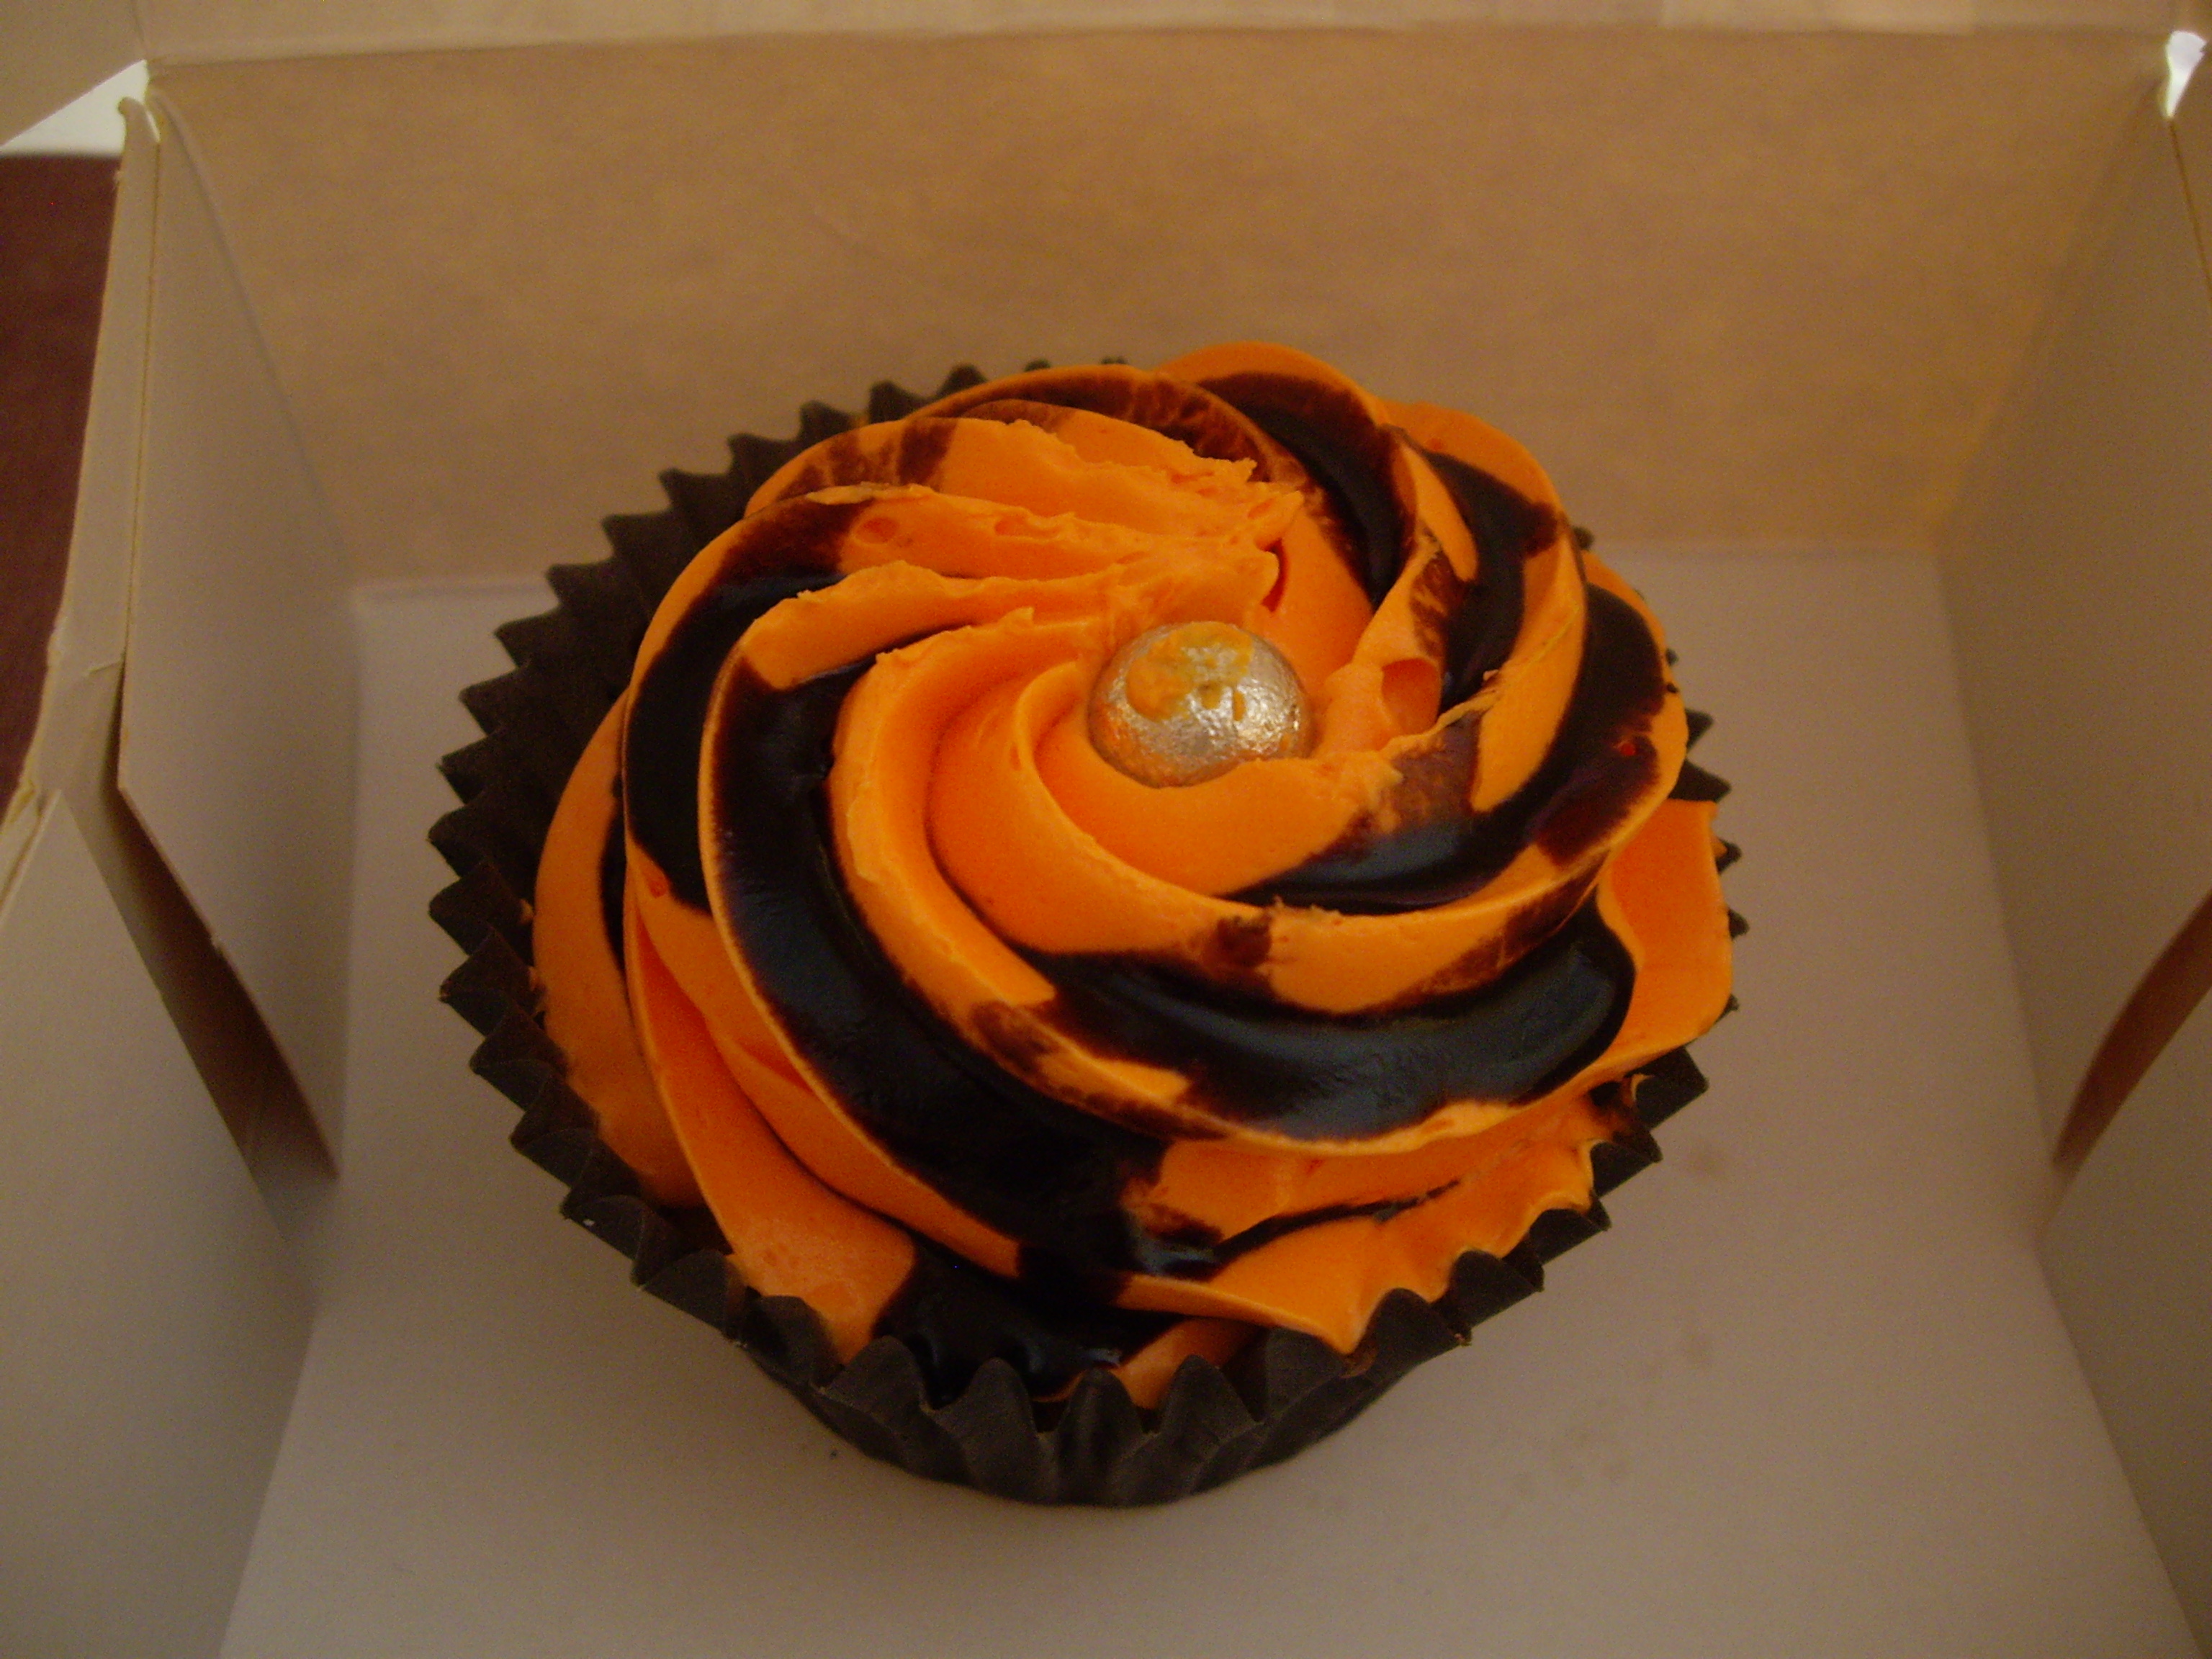 ものすごい色彩感覚のカップケーキ。かぼちゃではなくオレンジだそうだ。